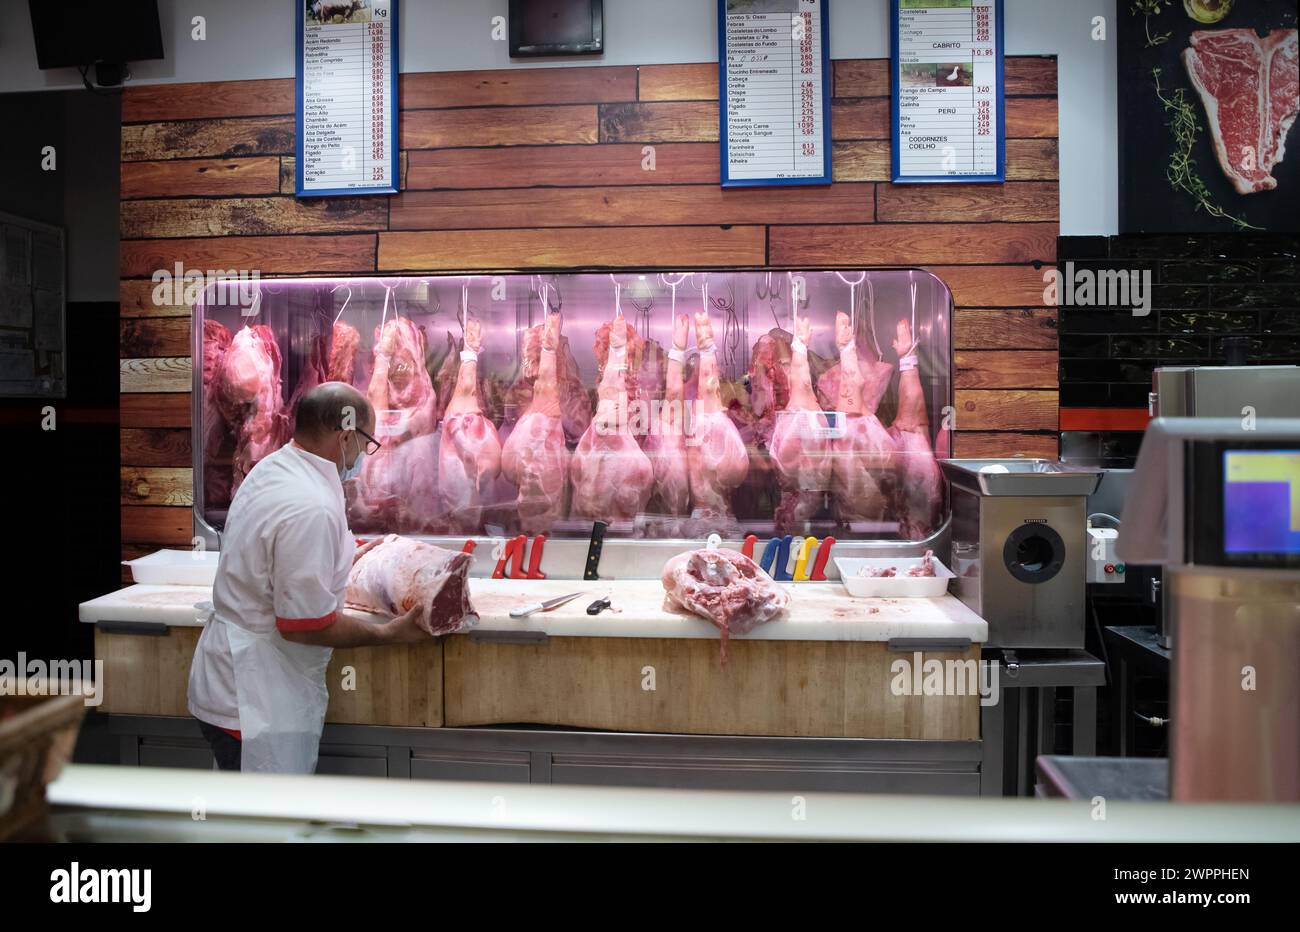 Algarve, Faro, Portugal 26 septembre 2020 vendeurs offrant de la viande fraîche à l'exposition au marché. comptoir de viande au marché Banque D'Images